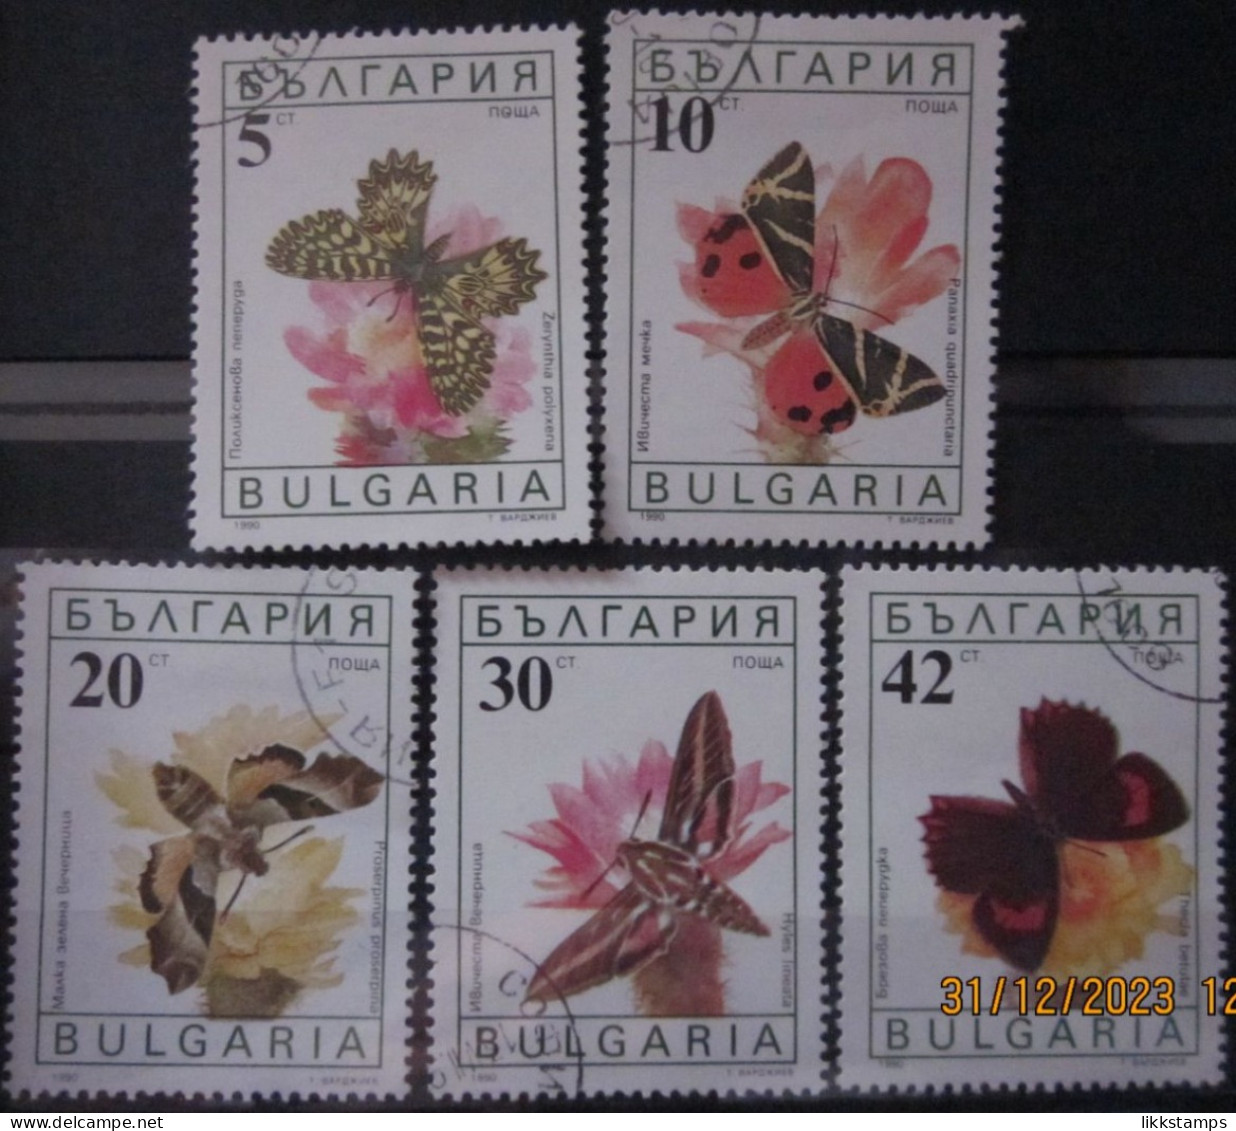 BULGARIA 1990 ~ S.G. 3699 - 3703, ~ BUTTERFLIES AND MOTHS. ~  VFU #02913 - Gebraucht